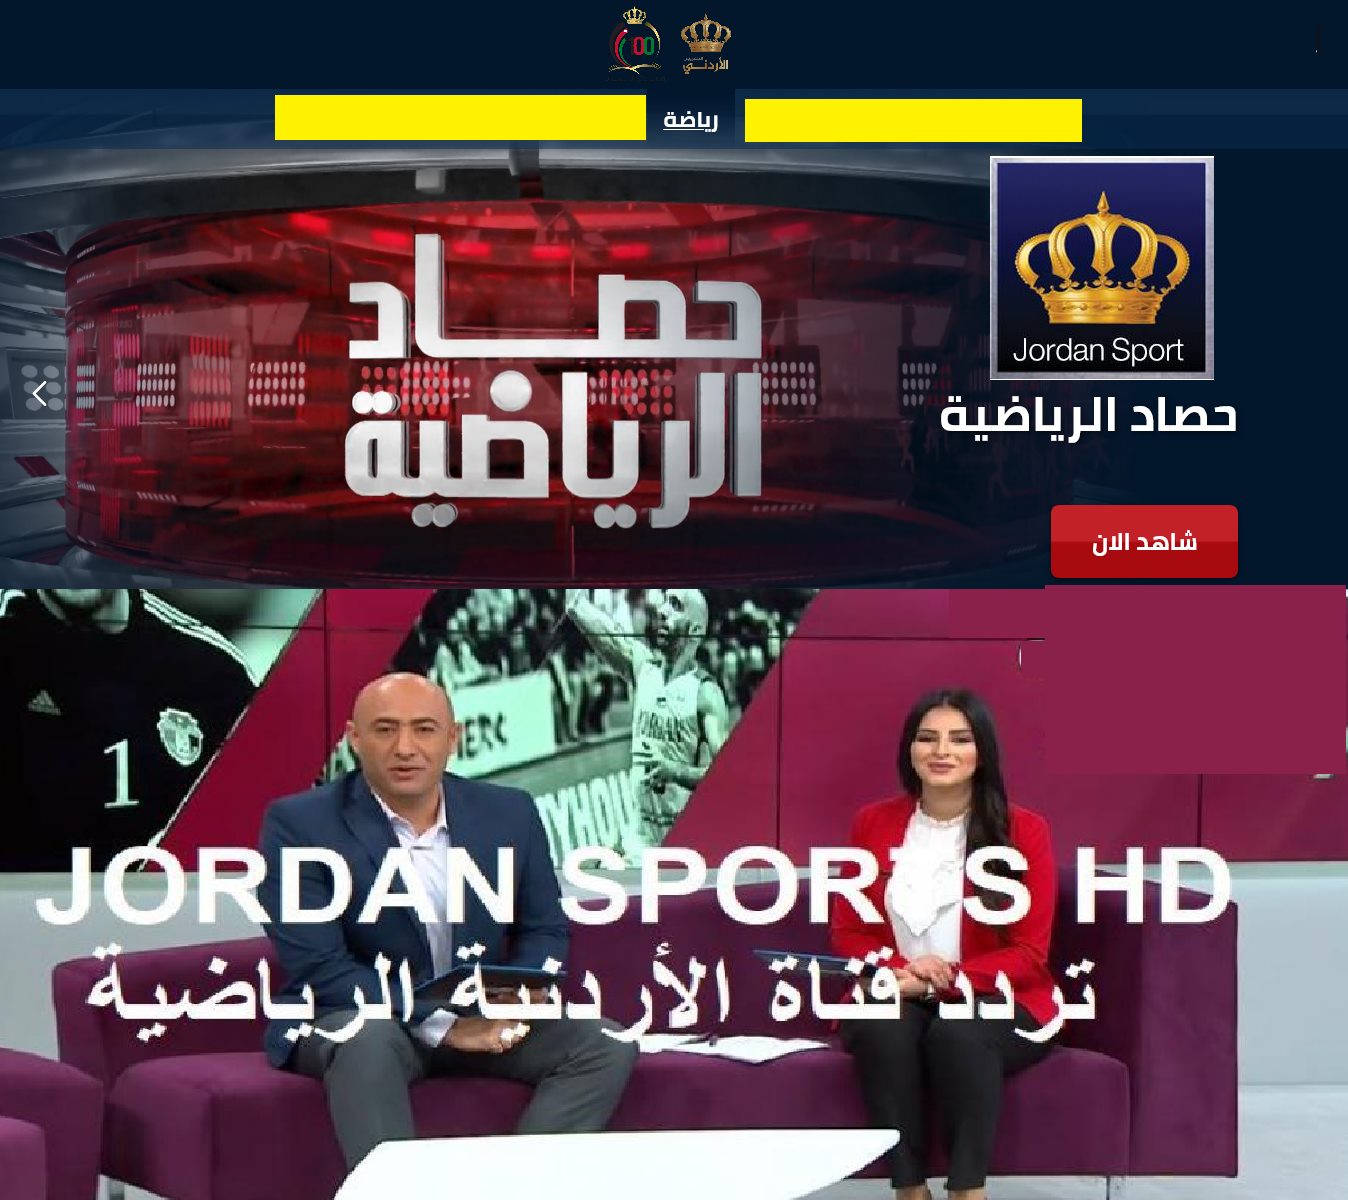 تردد قناة الأردن الرياضية جوردن سبورت Jordan Sports HD-SD الجديد ٢٠٢١ على نايل سات